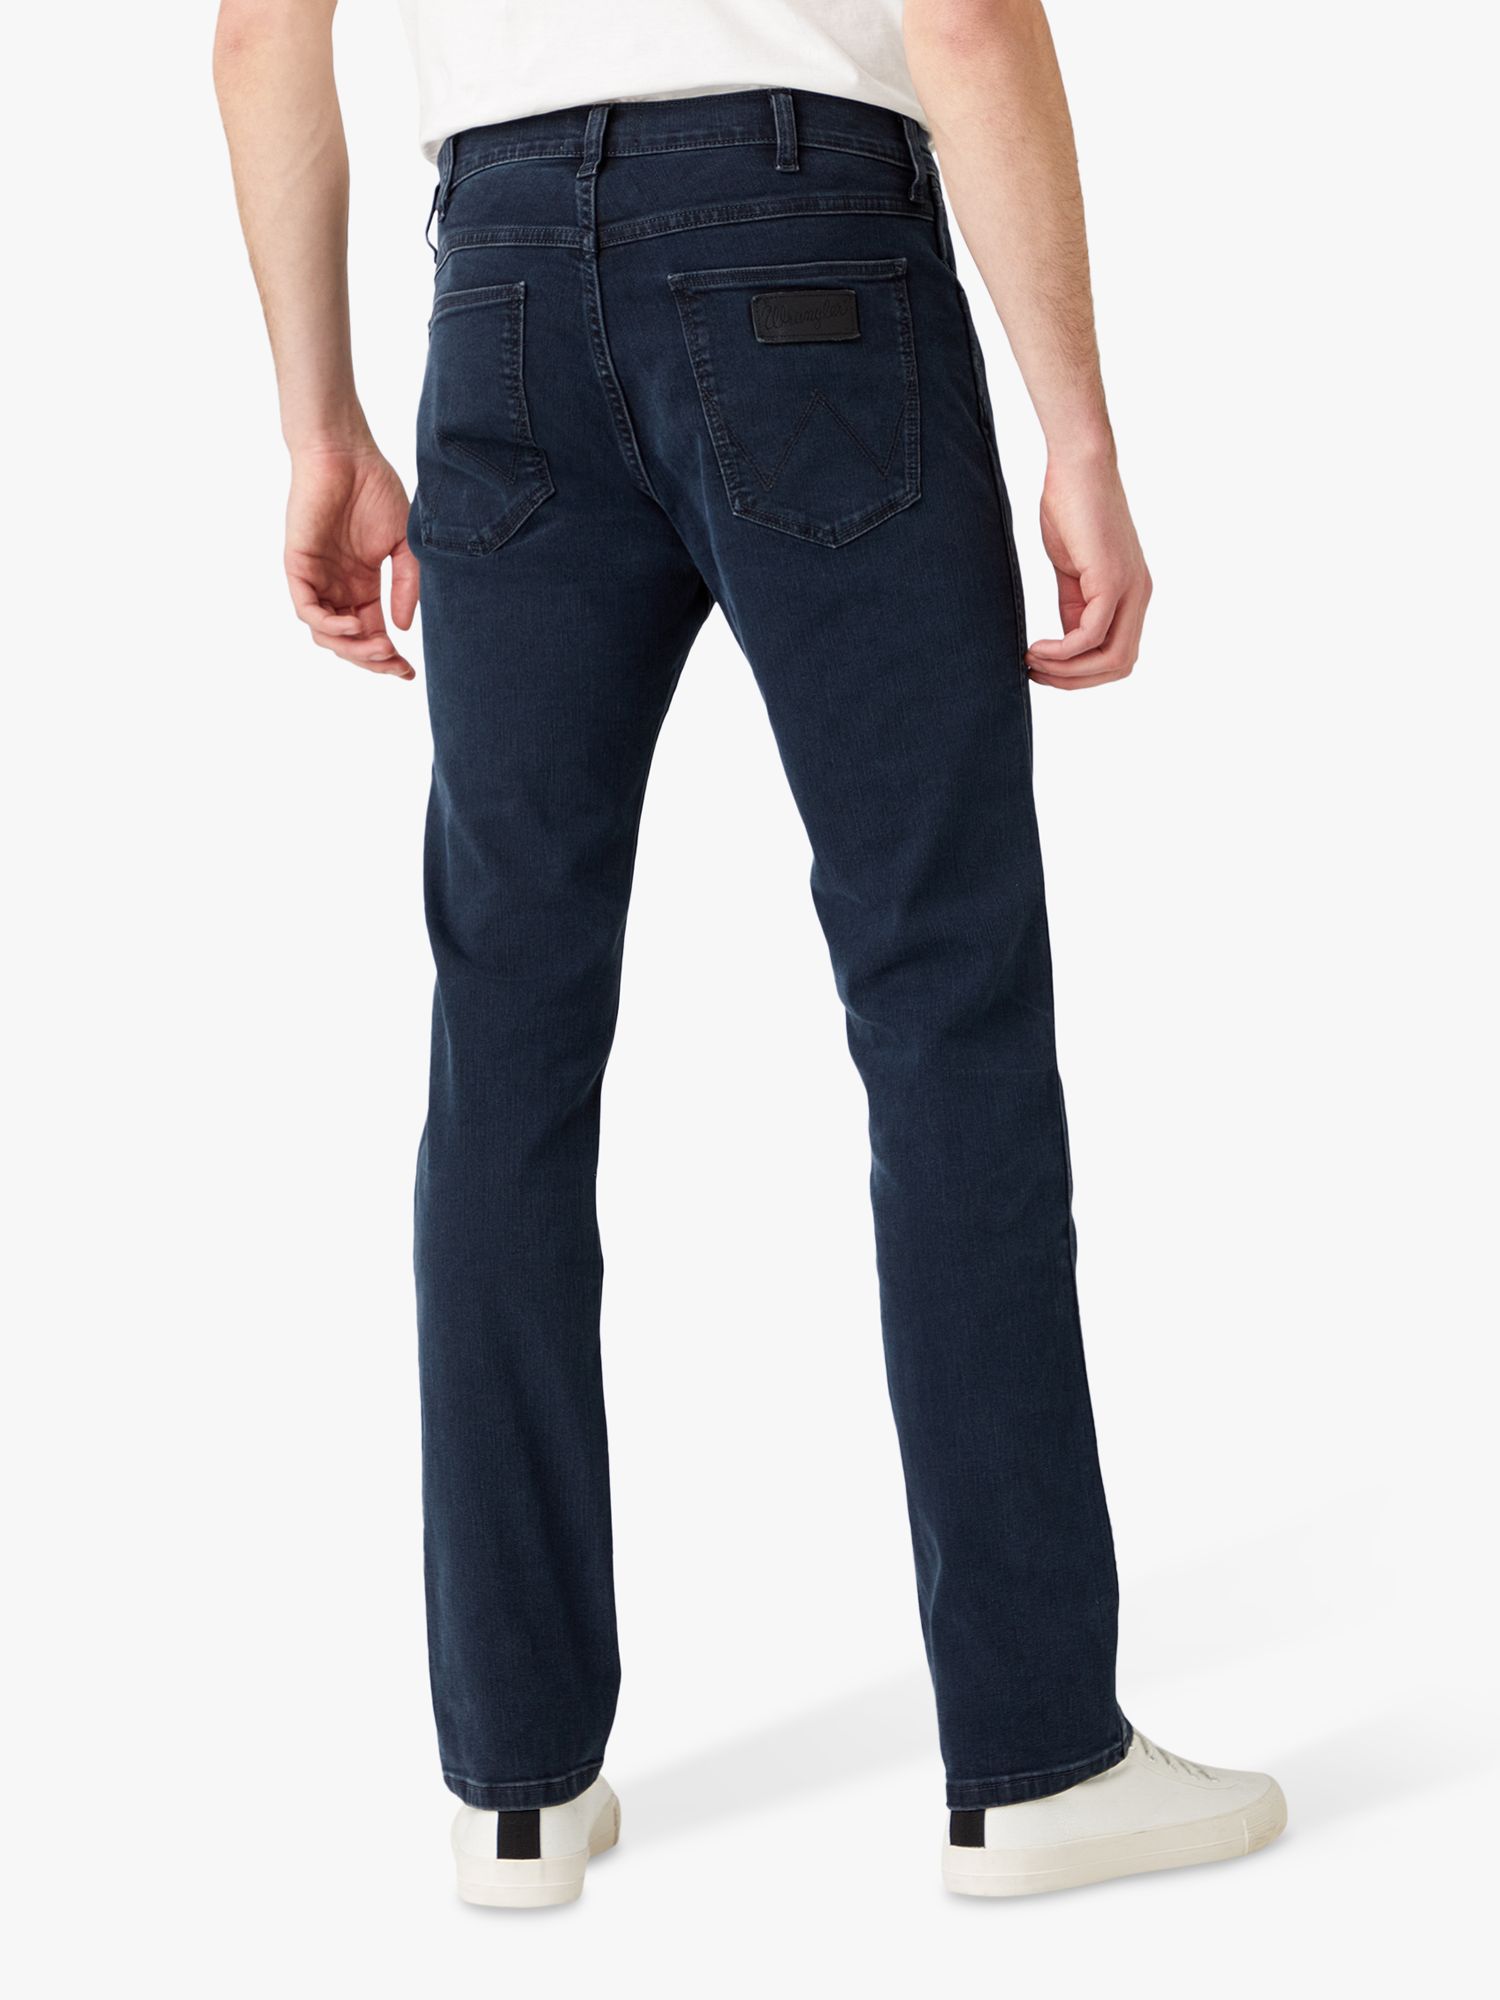 Wrangler Greensboro Slim Fit Denim Jeans, Blue at John Lewis Partners